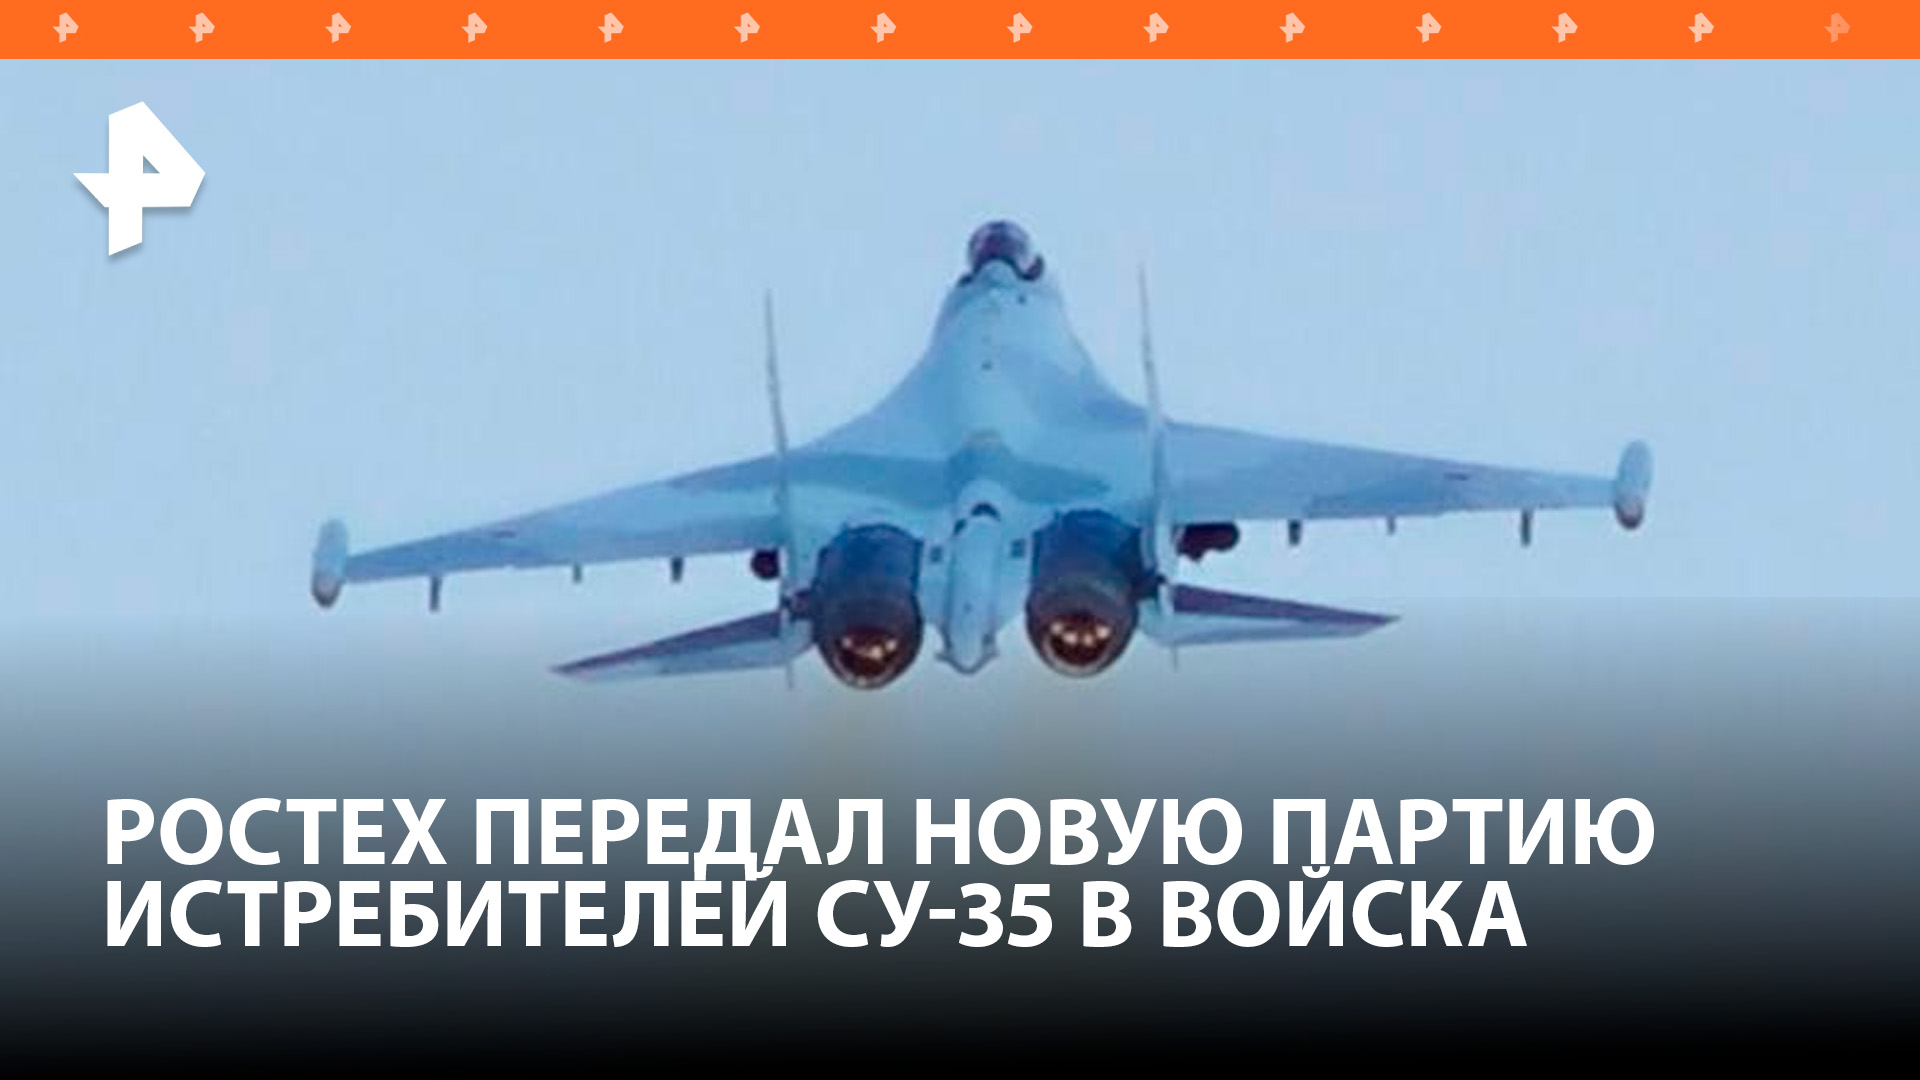 Первая в этом году партия новых многофункциональных истребителей Су-35С передана Ростехом в войска